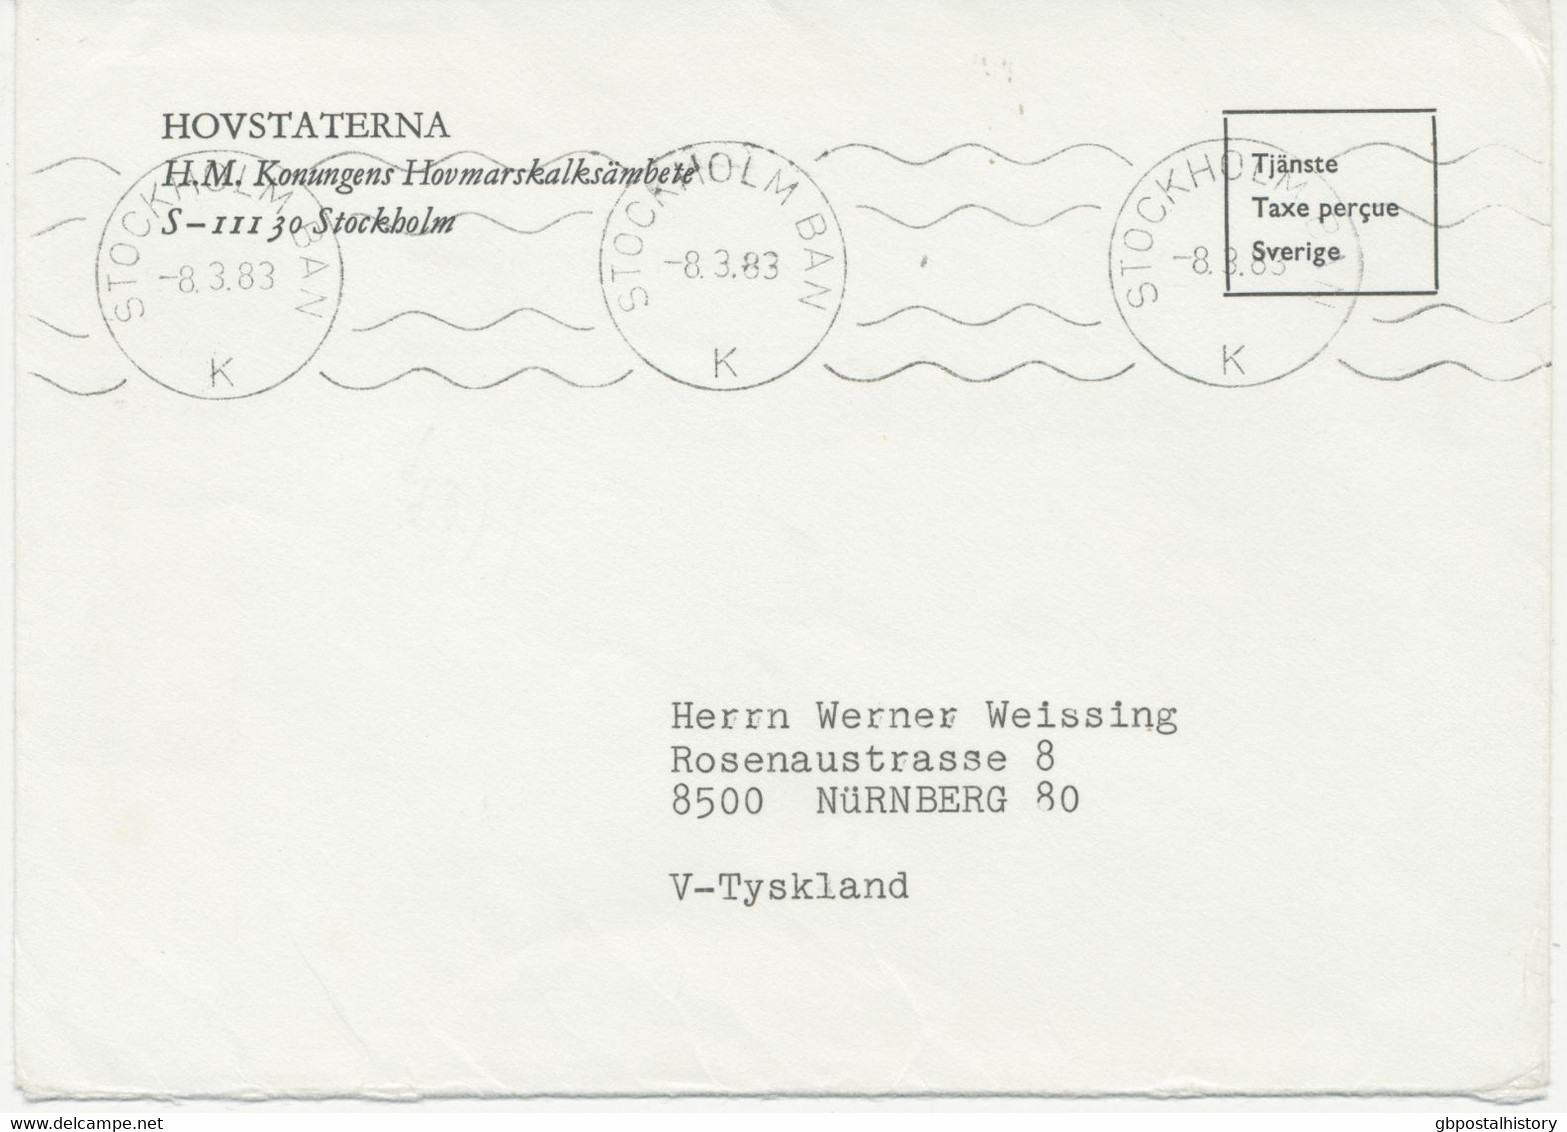 1983, Briefumschlag Des Königlichen Hauses, Schweden – Gebühr Bezahlt Mit Selt. Maschine-Stempel „STOCKHOLM BAN / K“ - Officials